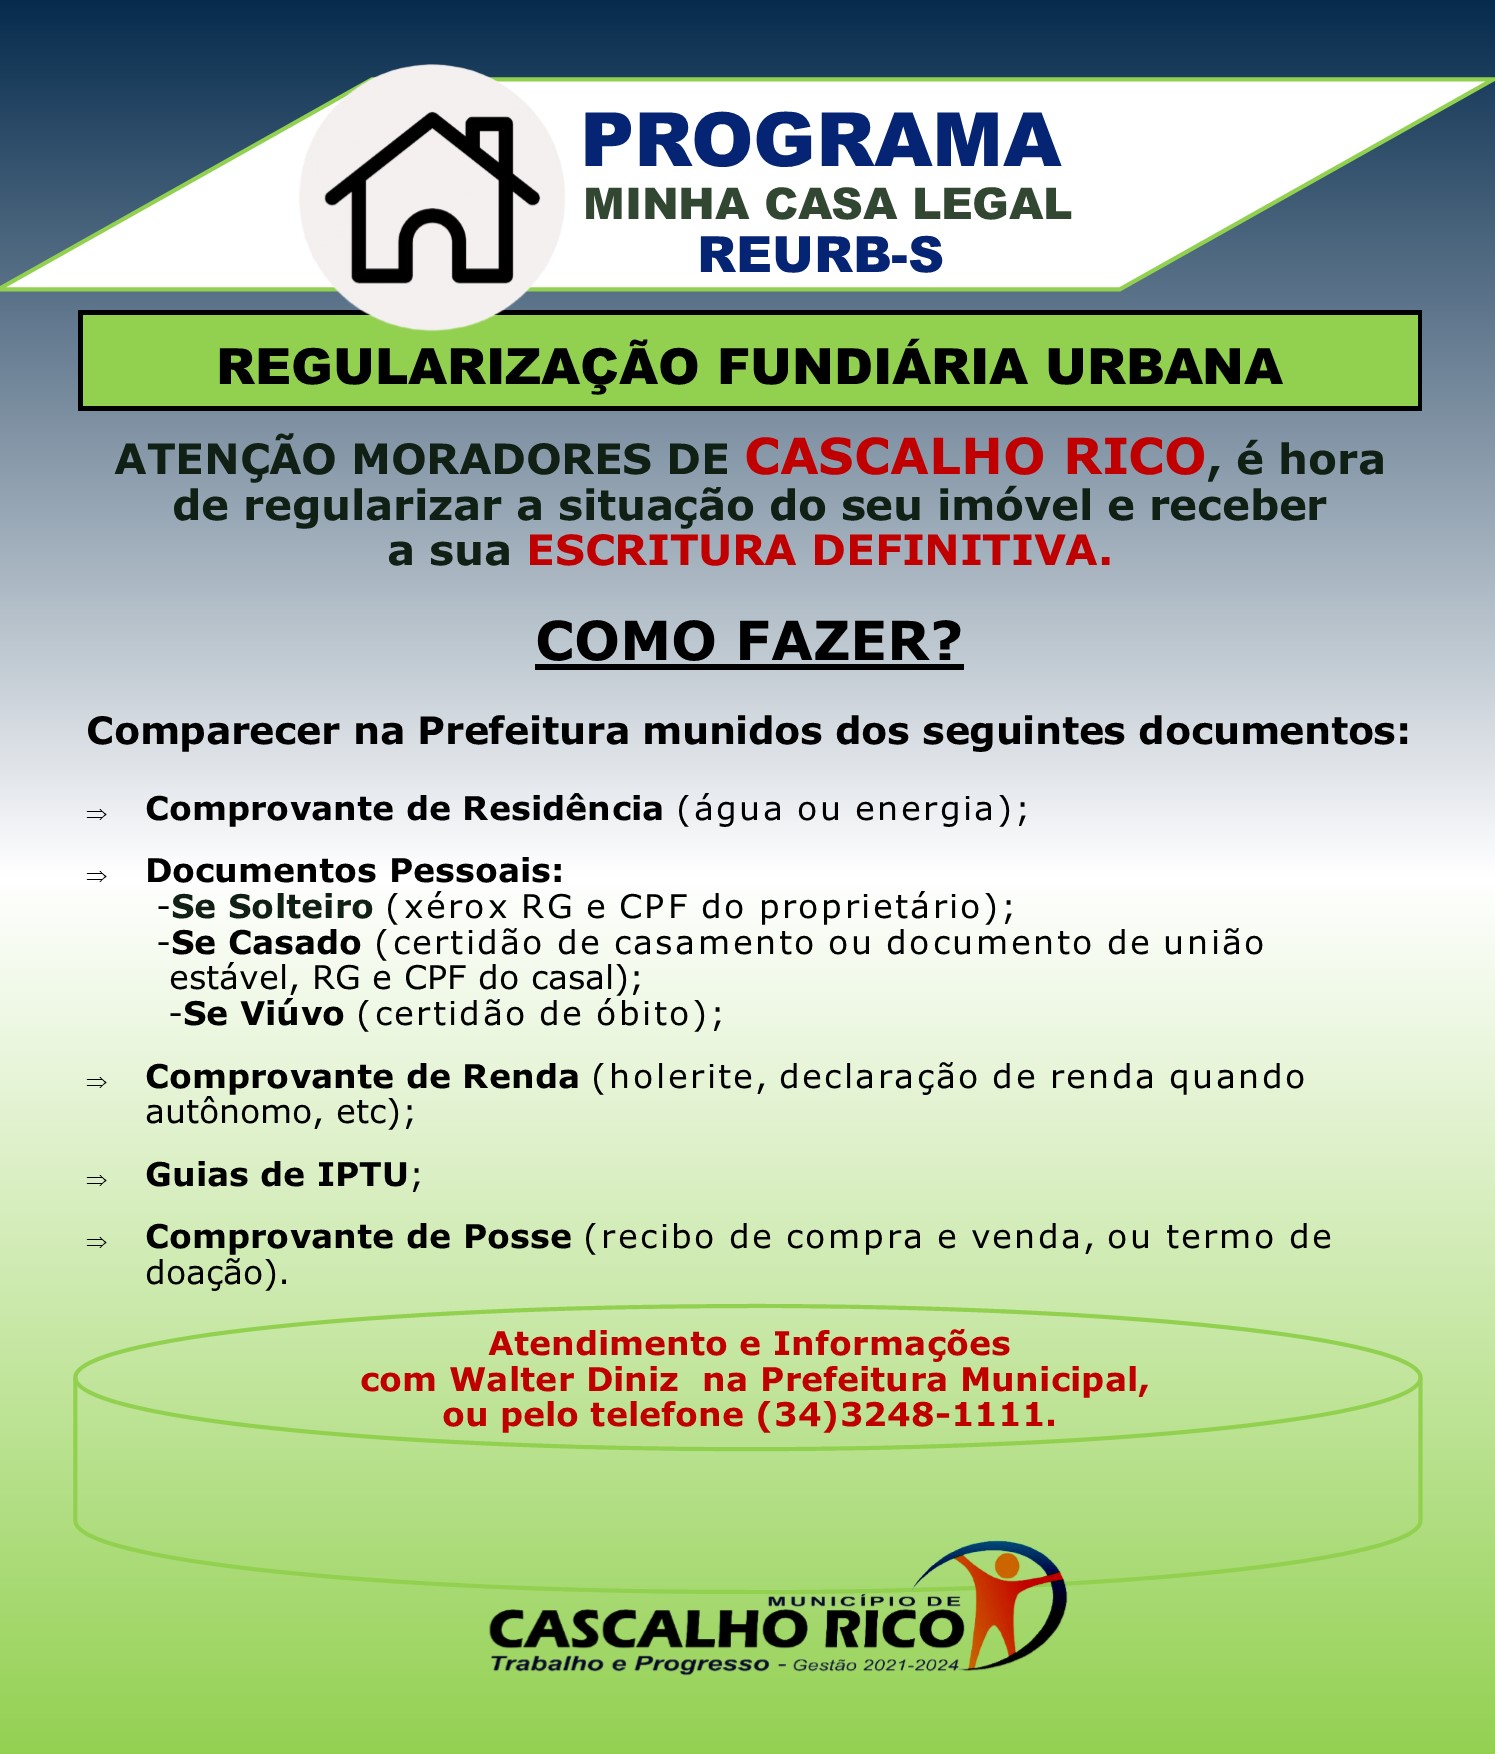 Moradores de Cascalho Rico já podem regularizar seus imóveis junto à Prefeitura